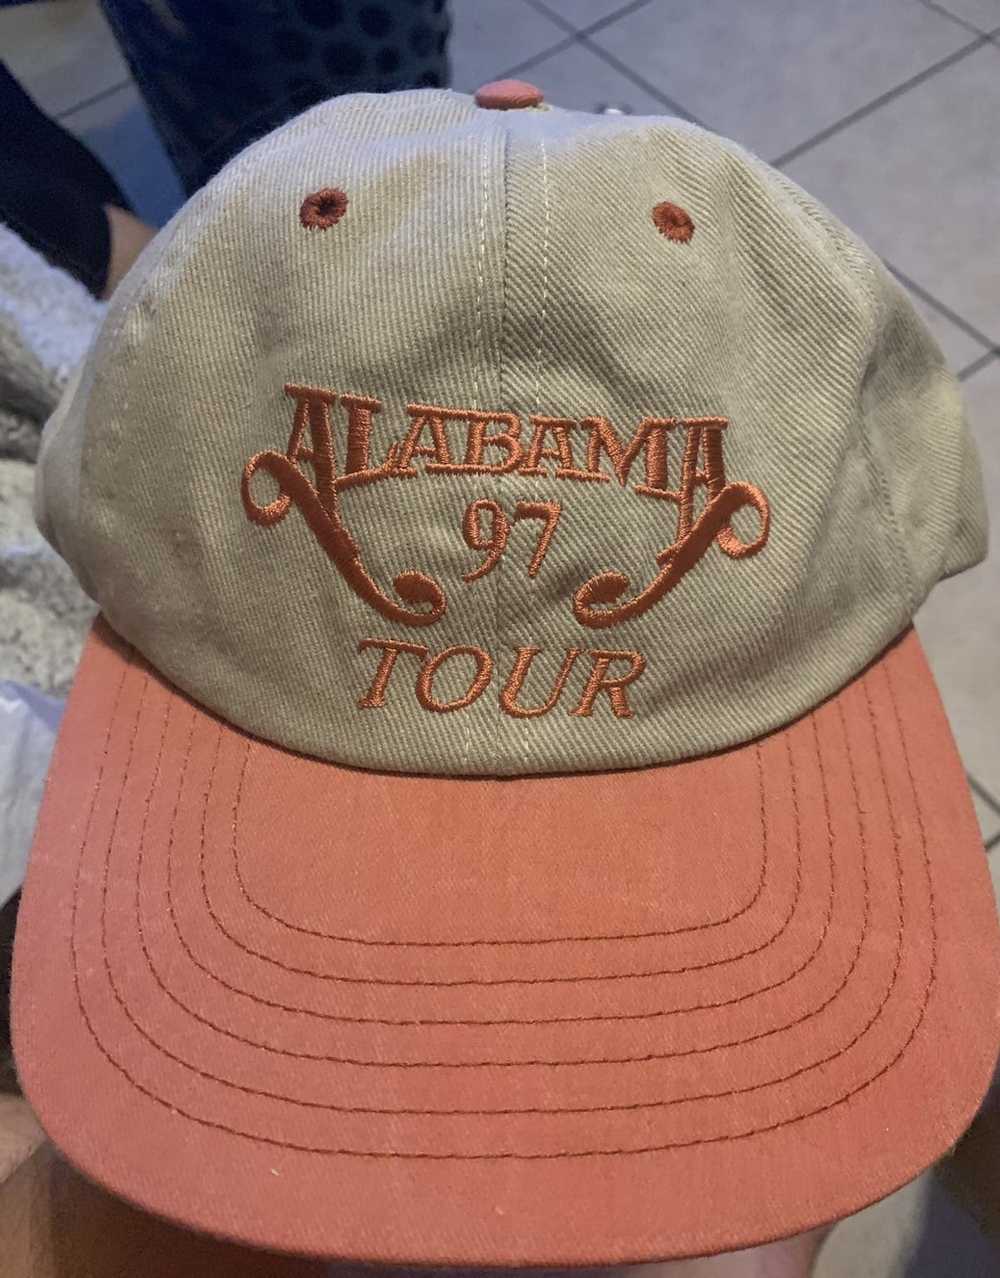 Vintage Alabama 1997 Band tour SnapBack hat cream - image 1